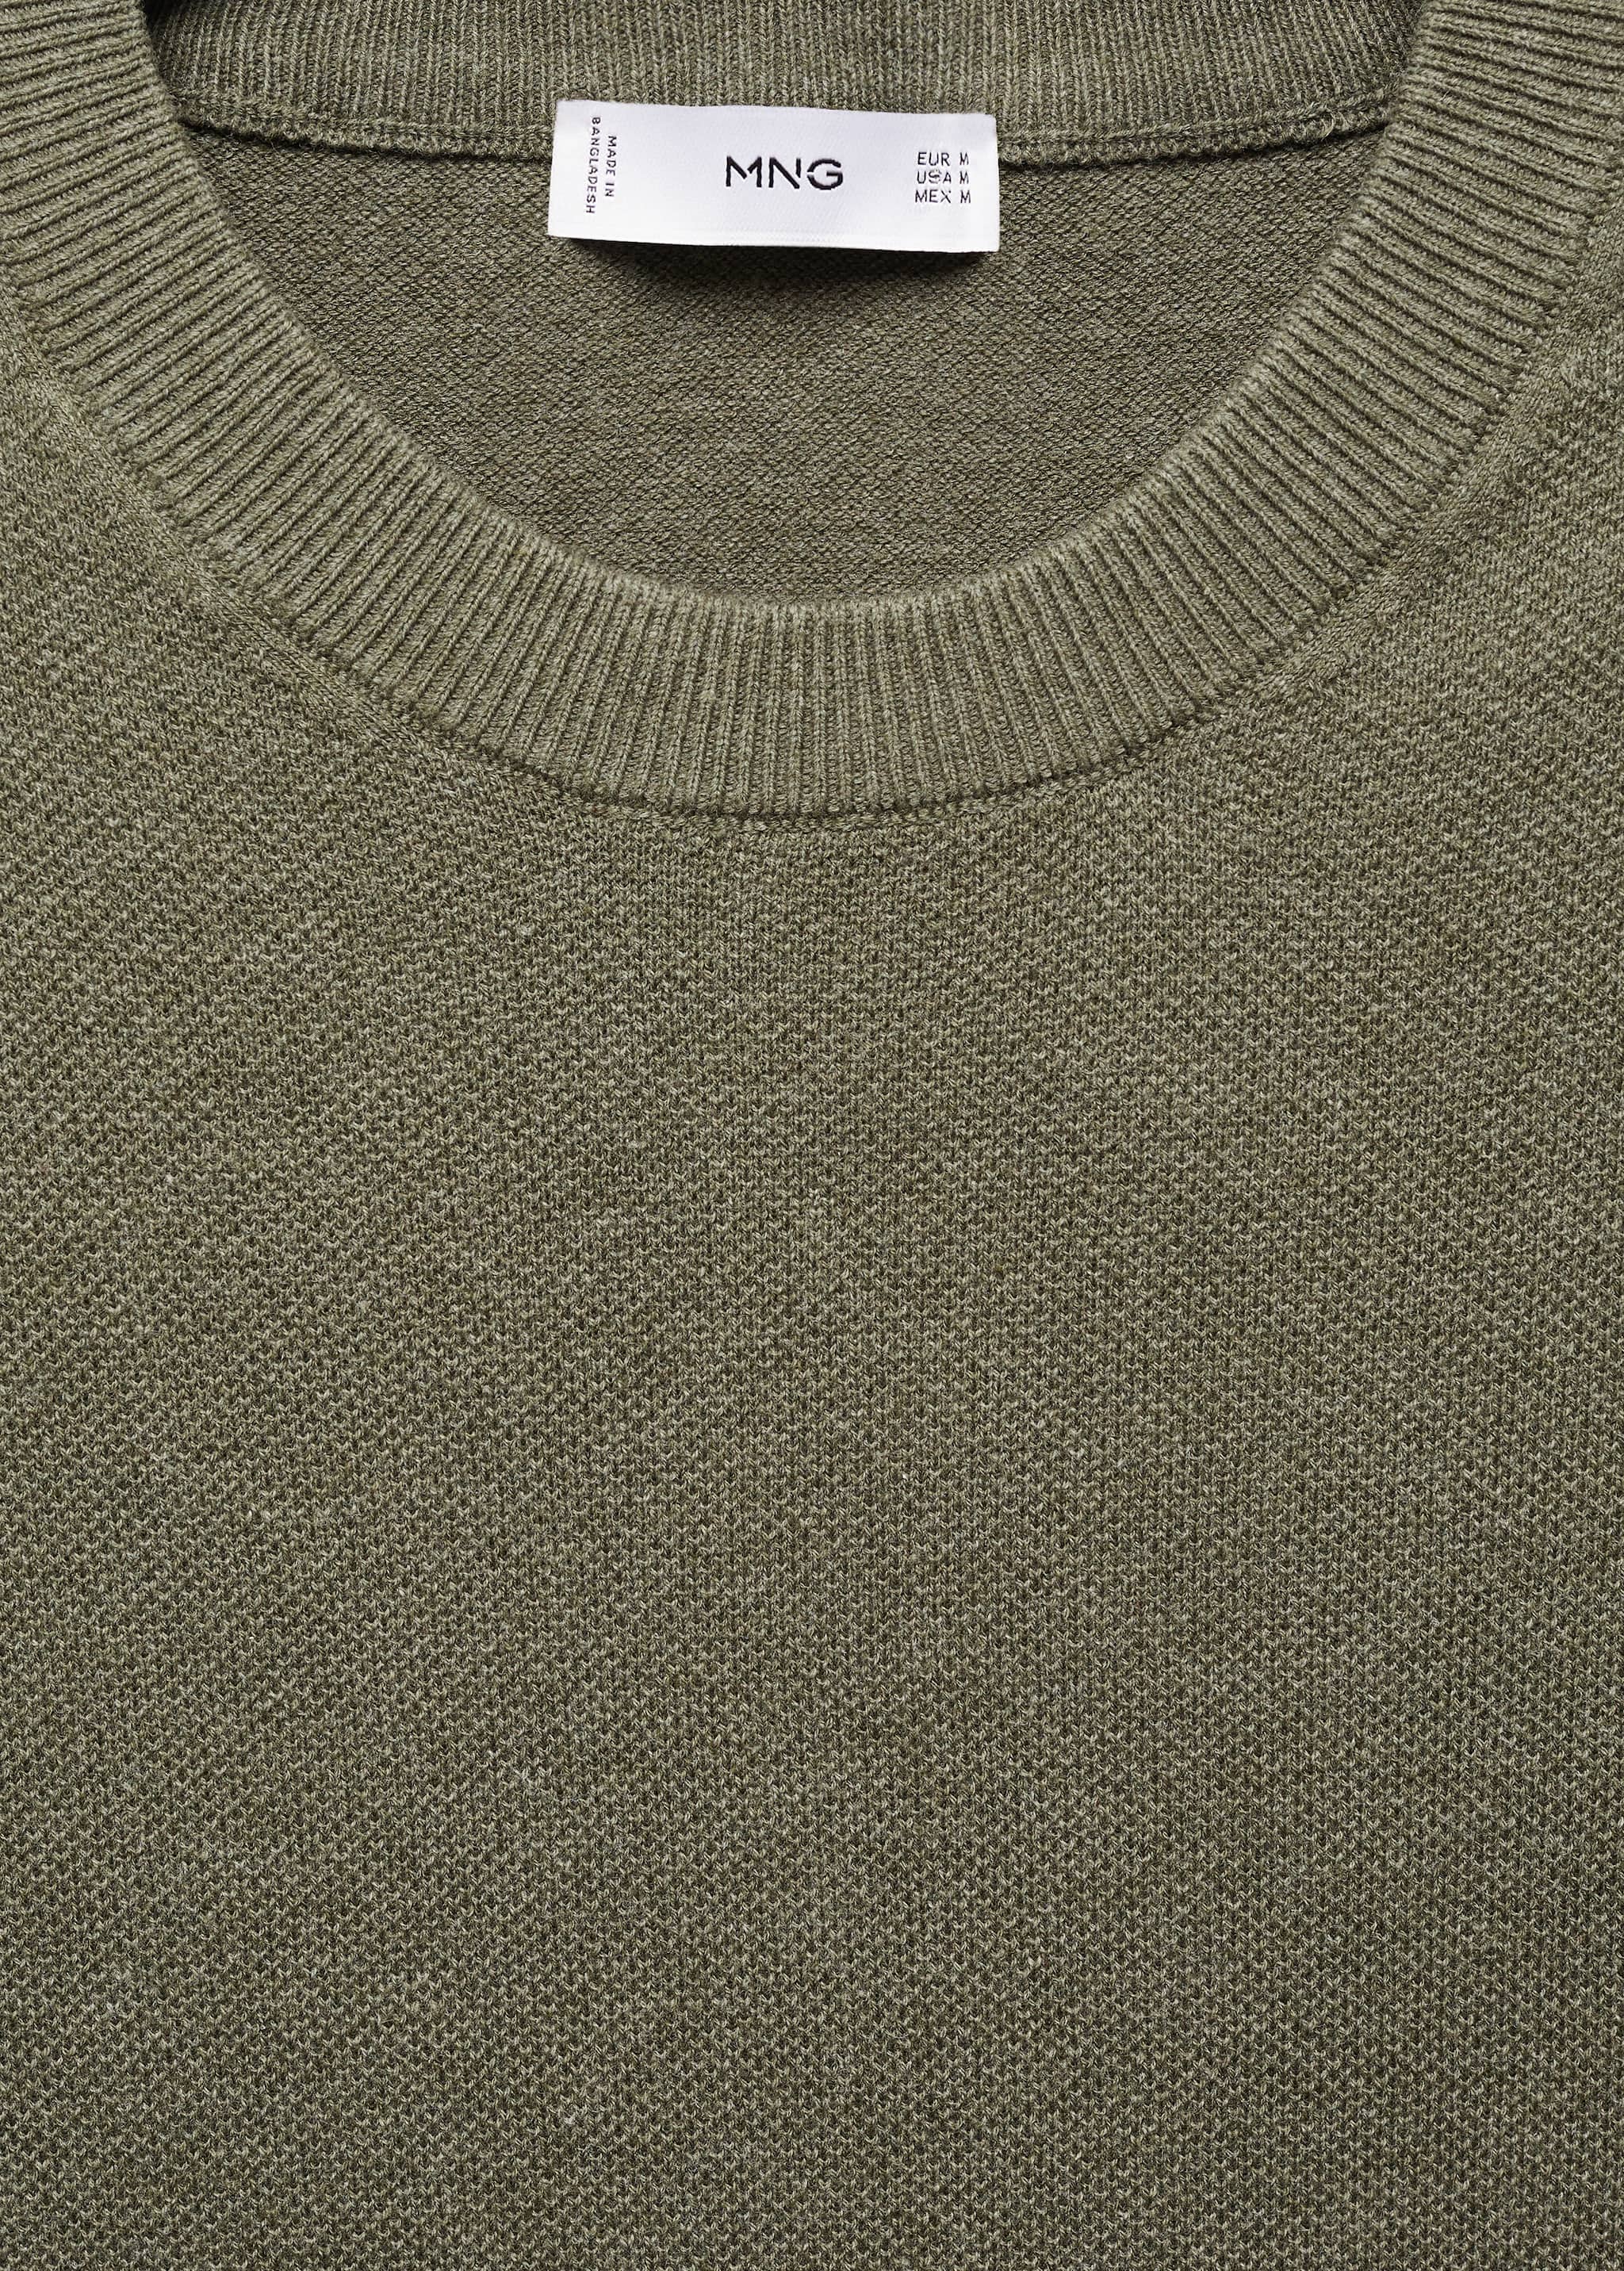 T-shirt maille coton structuré - Détail de l'article 8